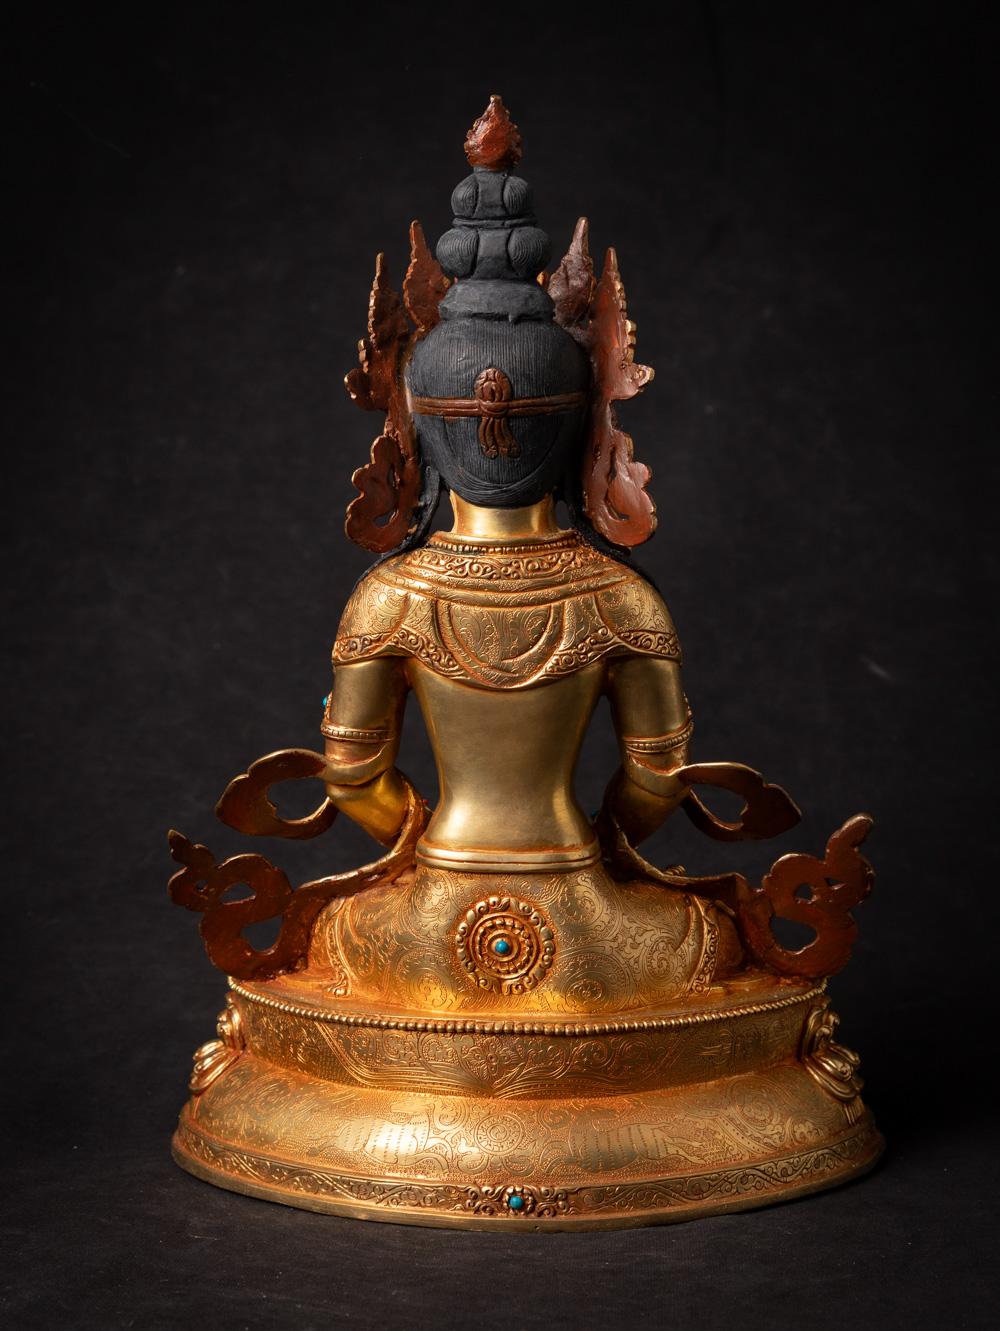 Matière : bronze
32,6 cm de haut
23,6 cm de large et 16,2 cm de profondeur
Feu doré avec de l'or 24 krt. - le visage est peint en or
Dhyana mudra
Nouvellement fabriquée dans la plus haute qualité !
Poids : 3,6 kgs
Originaire du Népal
Nr : 3713-8